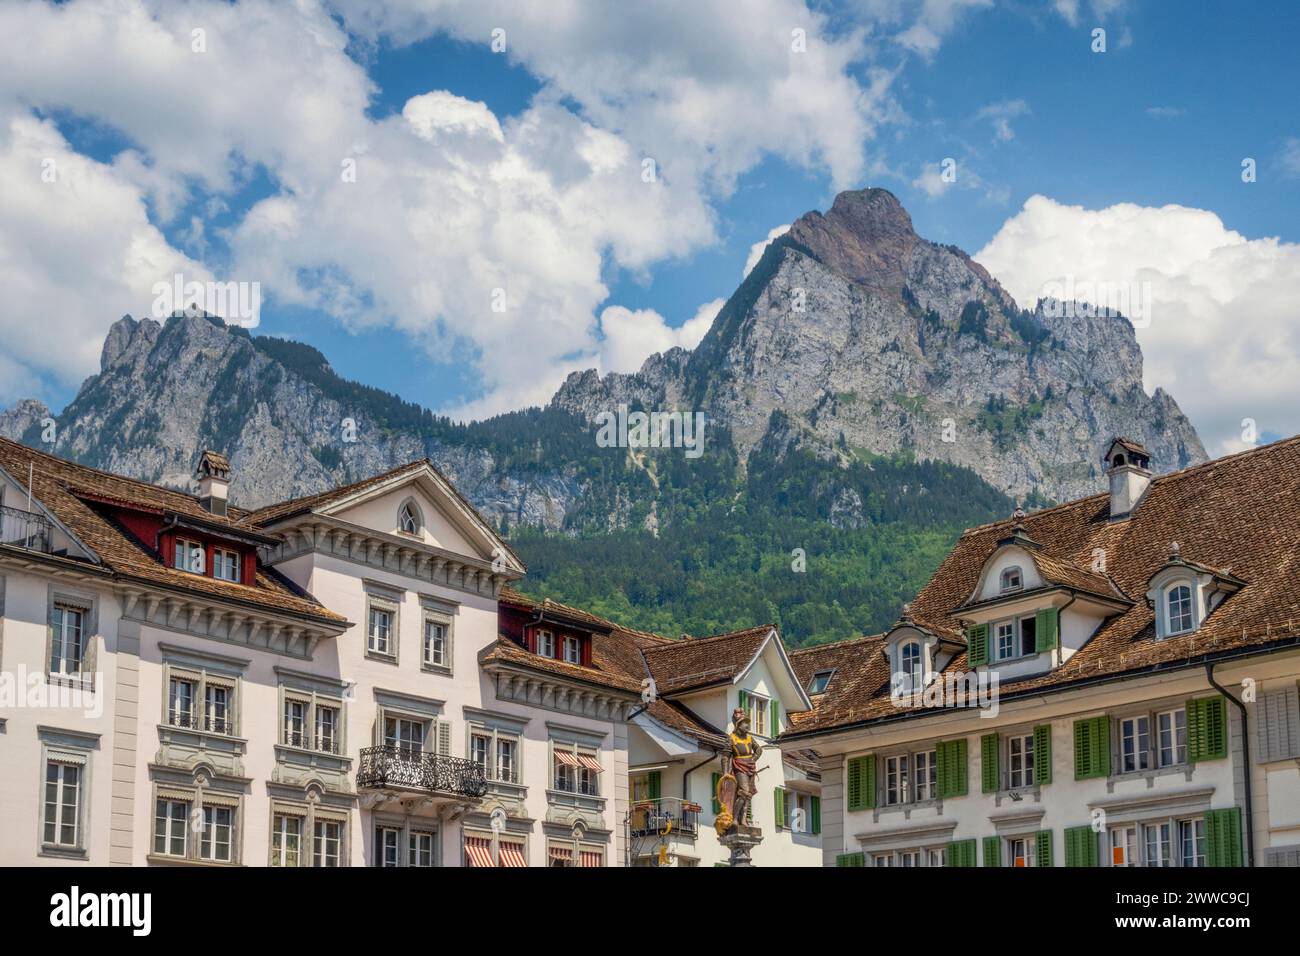 Main Square with summit of Grosser Mythen mountain in background, Central Switzerland, Canton Schwyz, Switzerland Stock Photo